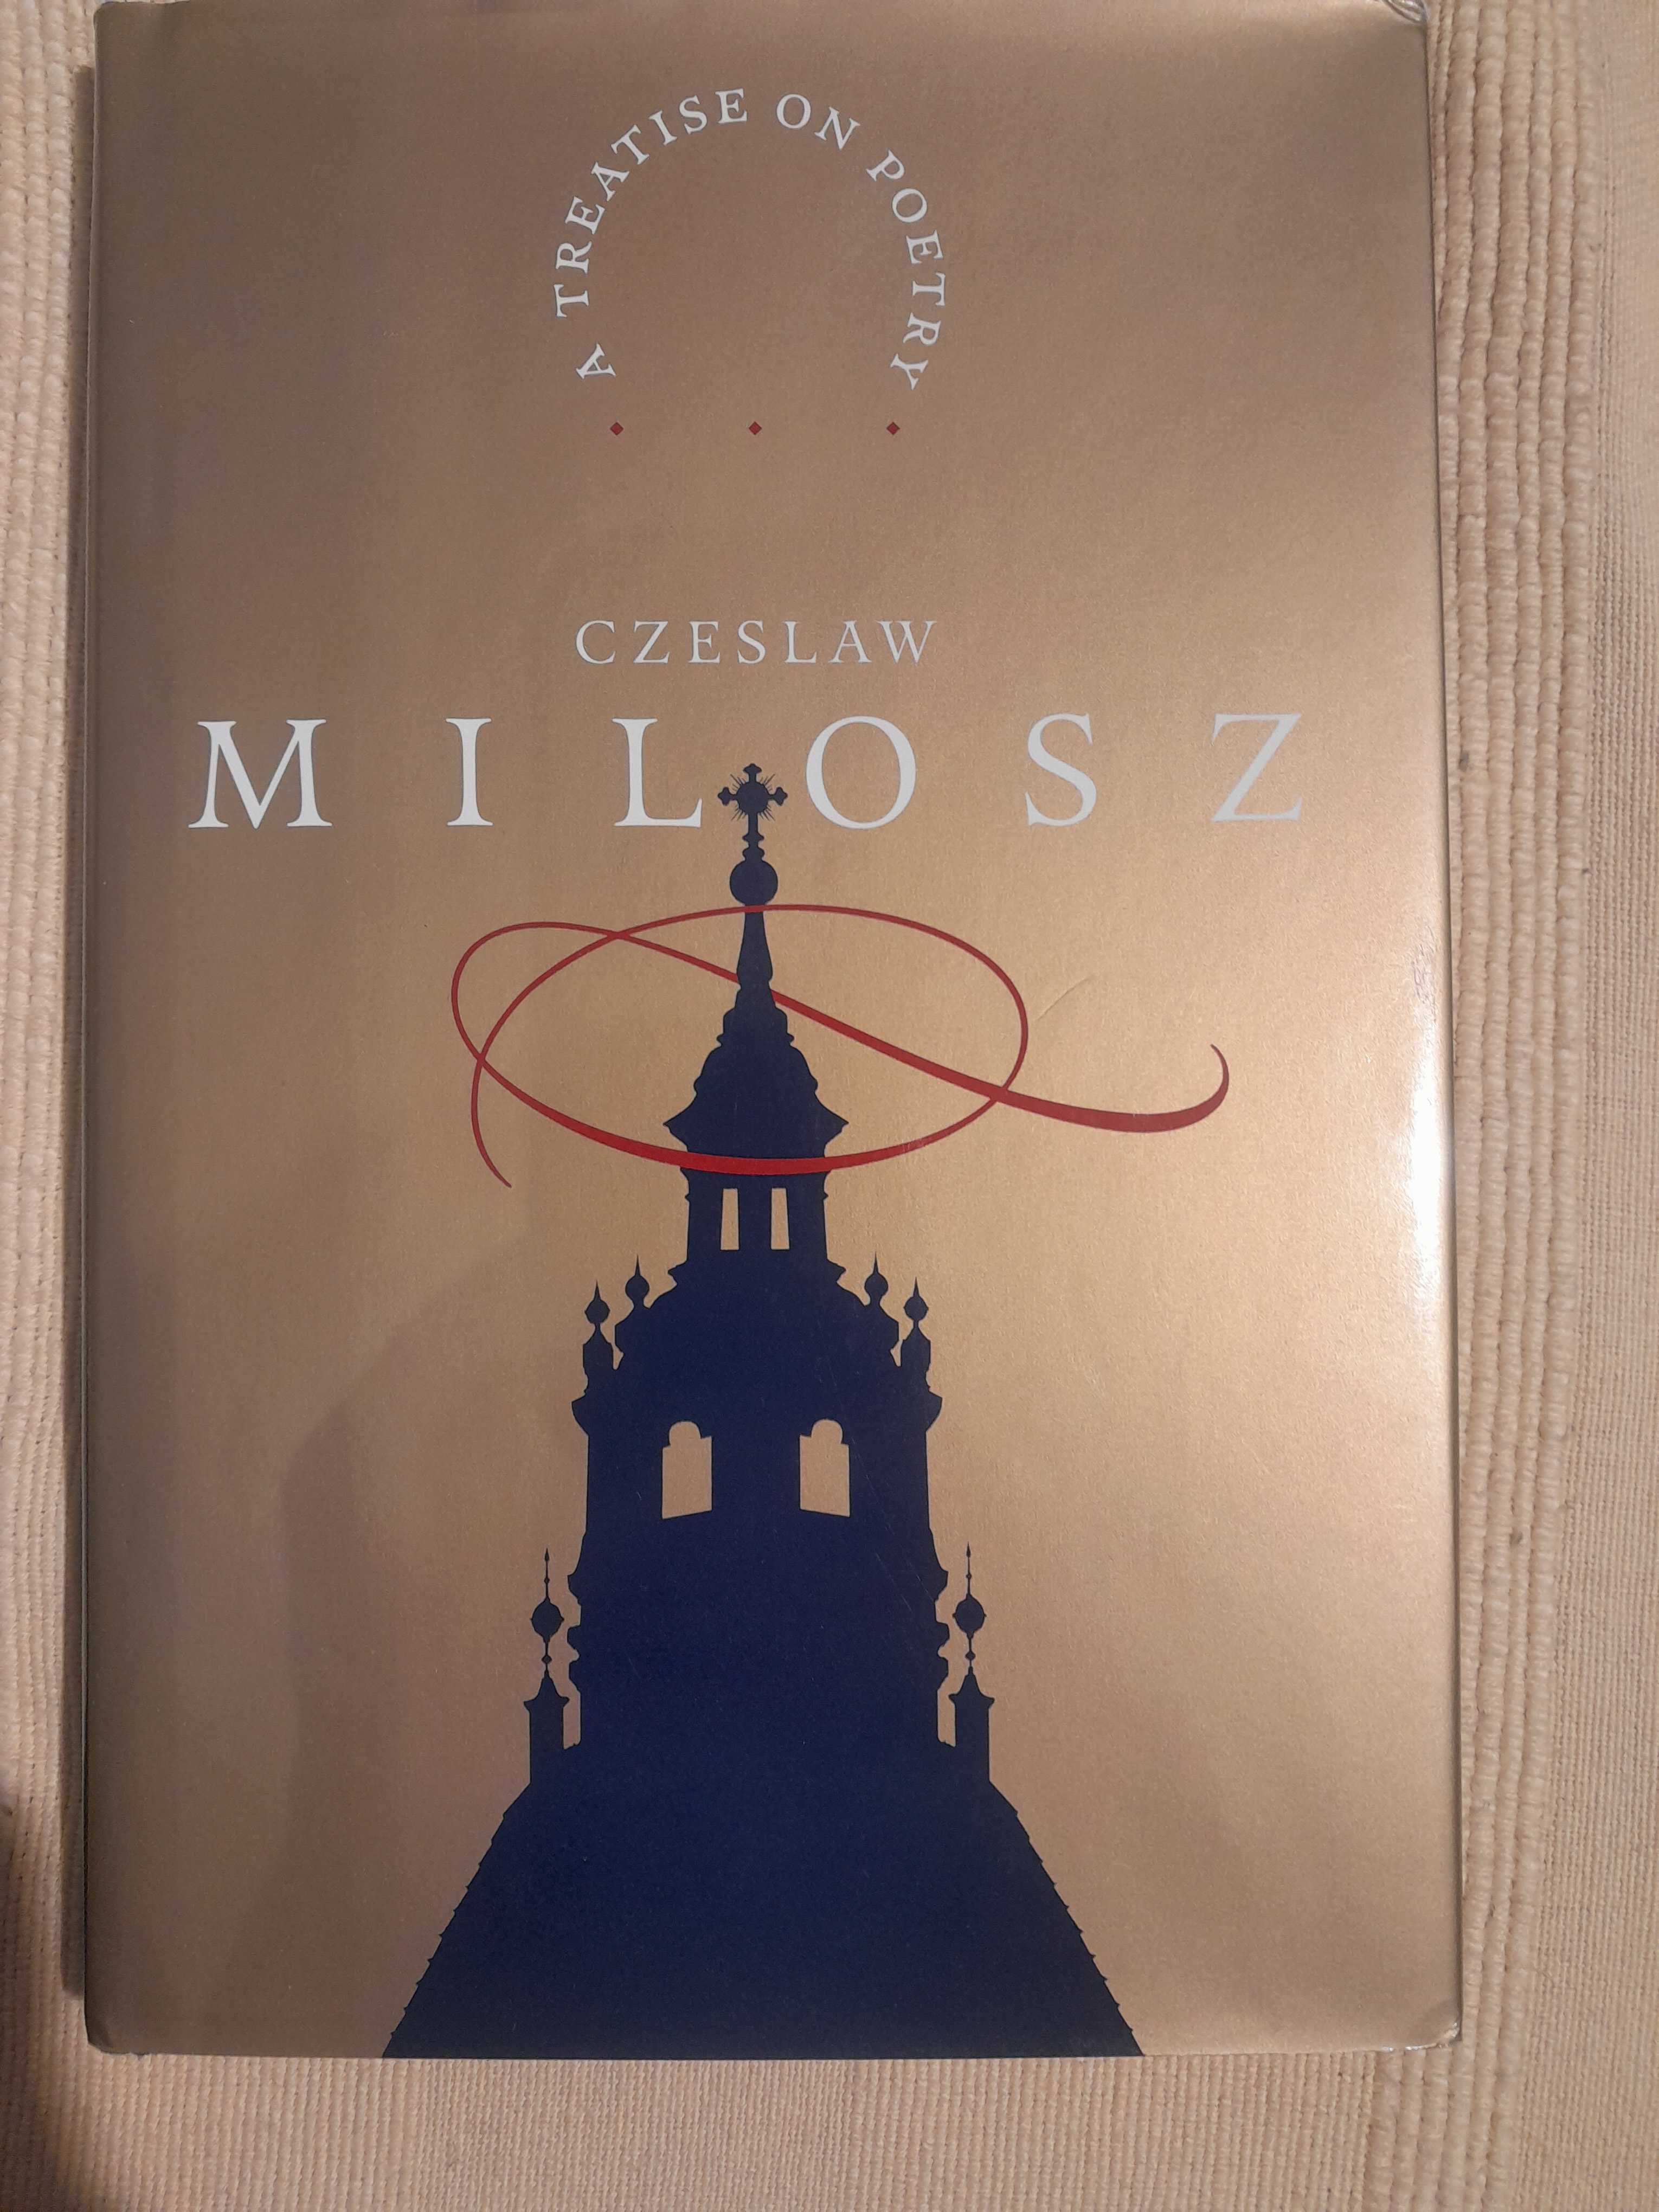 Czesław Miłosz, A treatise on poetry